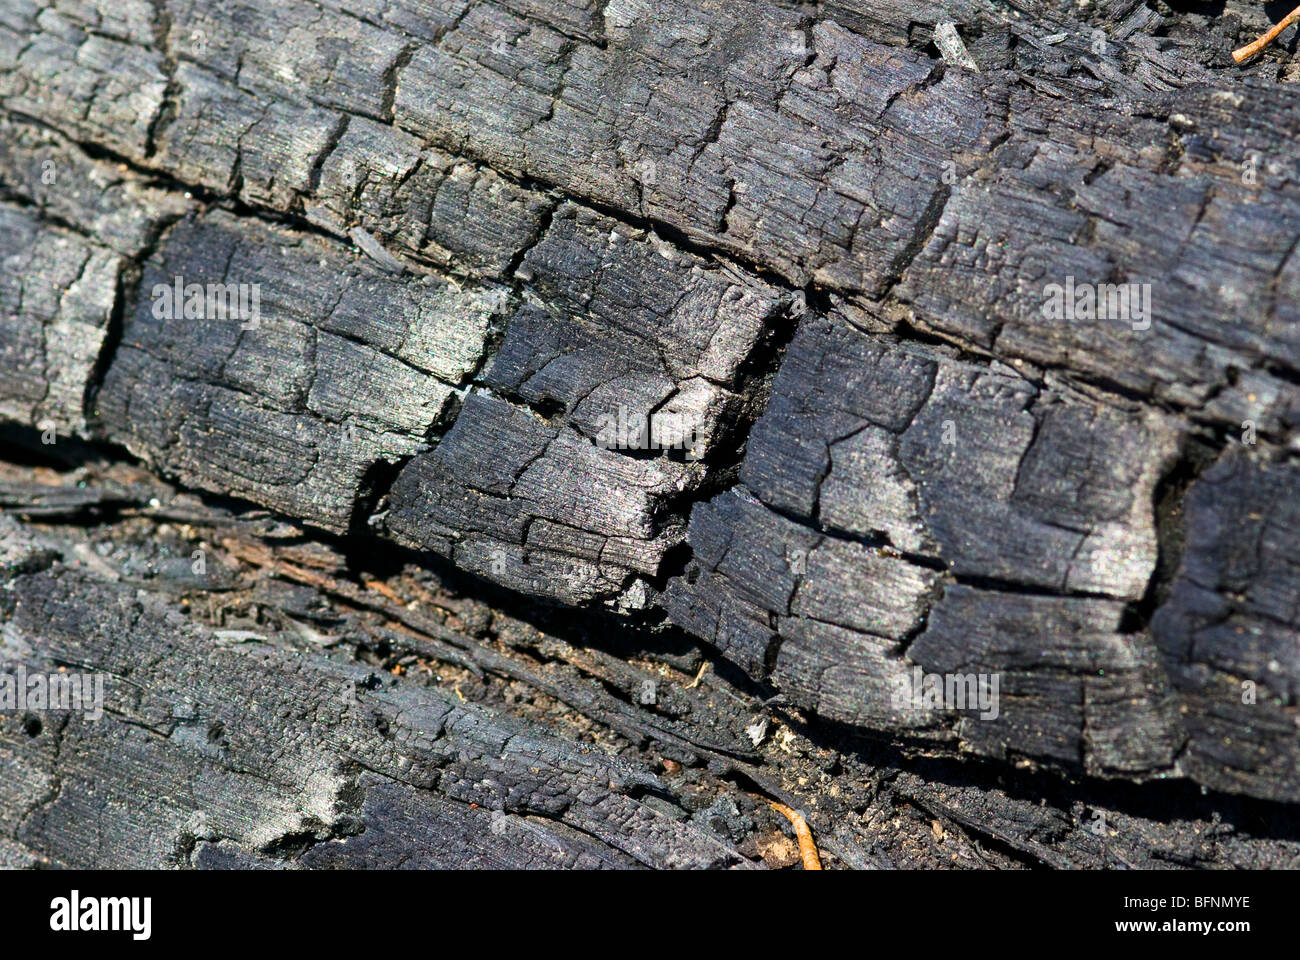 Les restes carbonisés et noirci d'une souche d'arbre après un feu de forêt. Banque D'Images